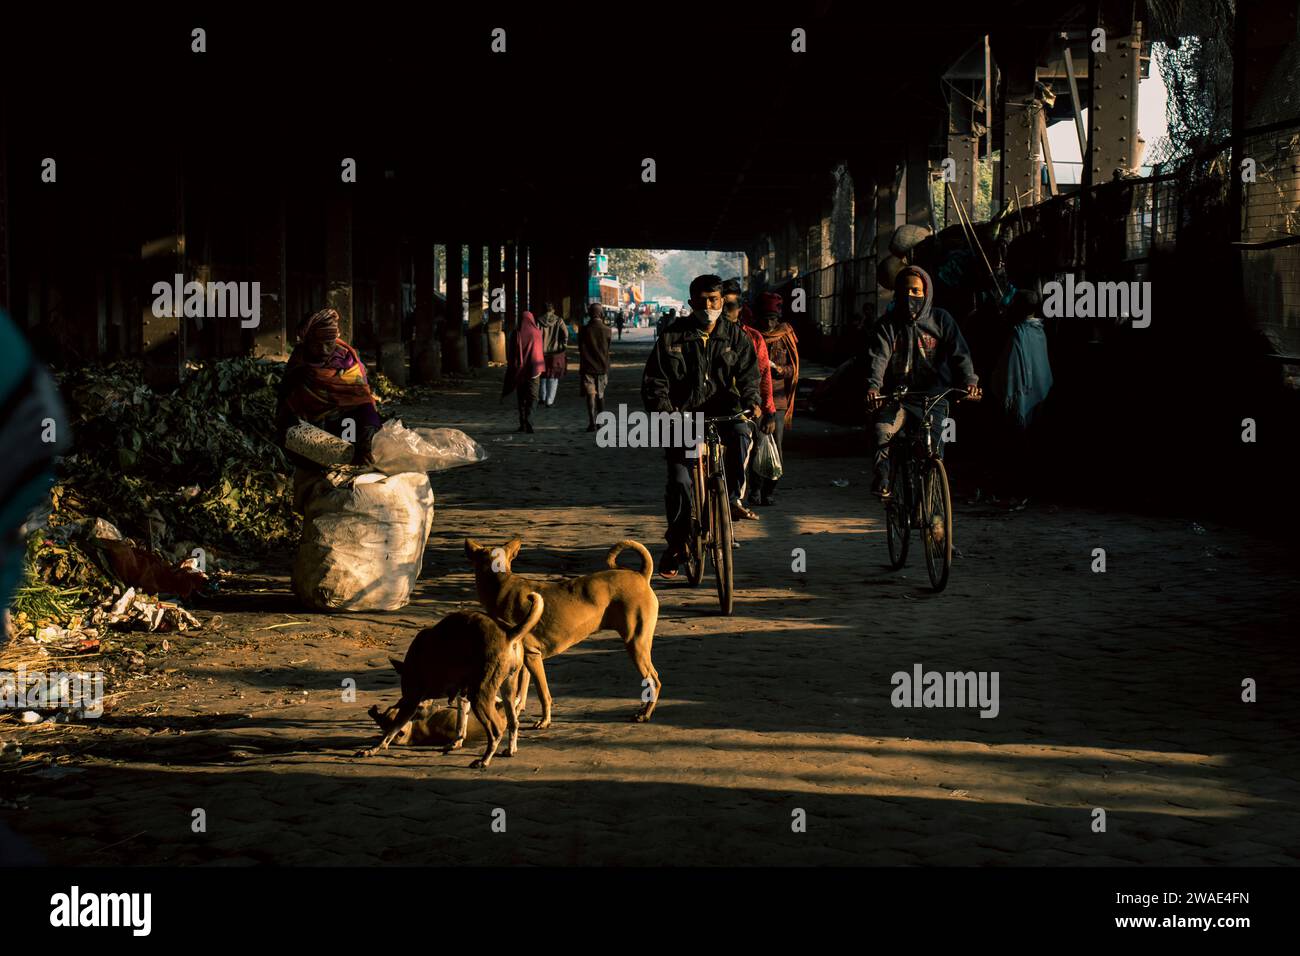 Un quartier pauvre de Kolkata avec des gens qui font du vélo dans la rue et des chiens errants qui jouent Banque D'Images